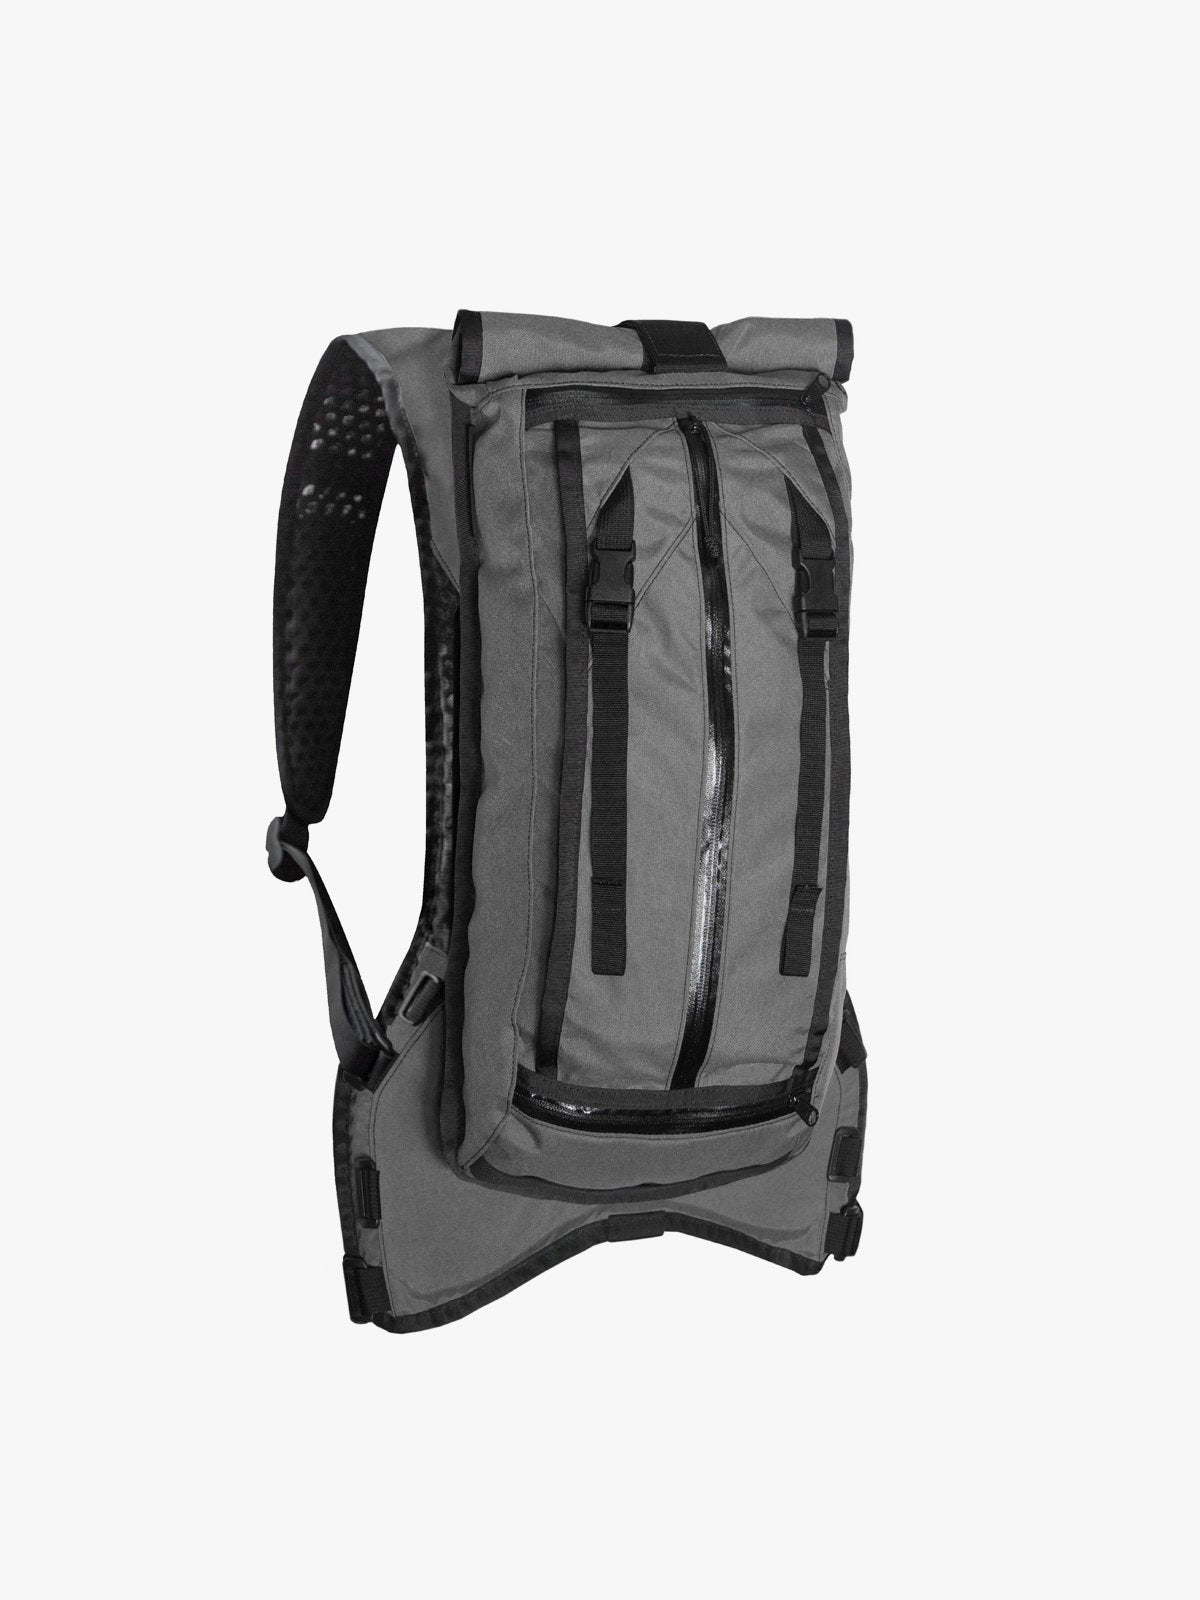 Hauser 10L by Mission Workshop - Weatherproof Bags & Technical Apparel - San Francisco & Los Angeles - Construit pour durer - Garanti pour toujours